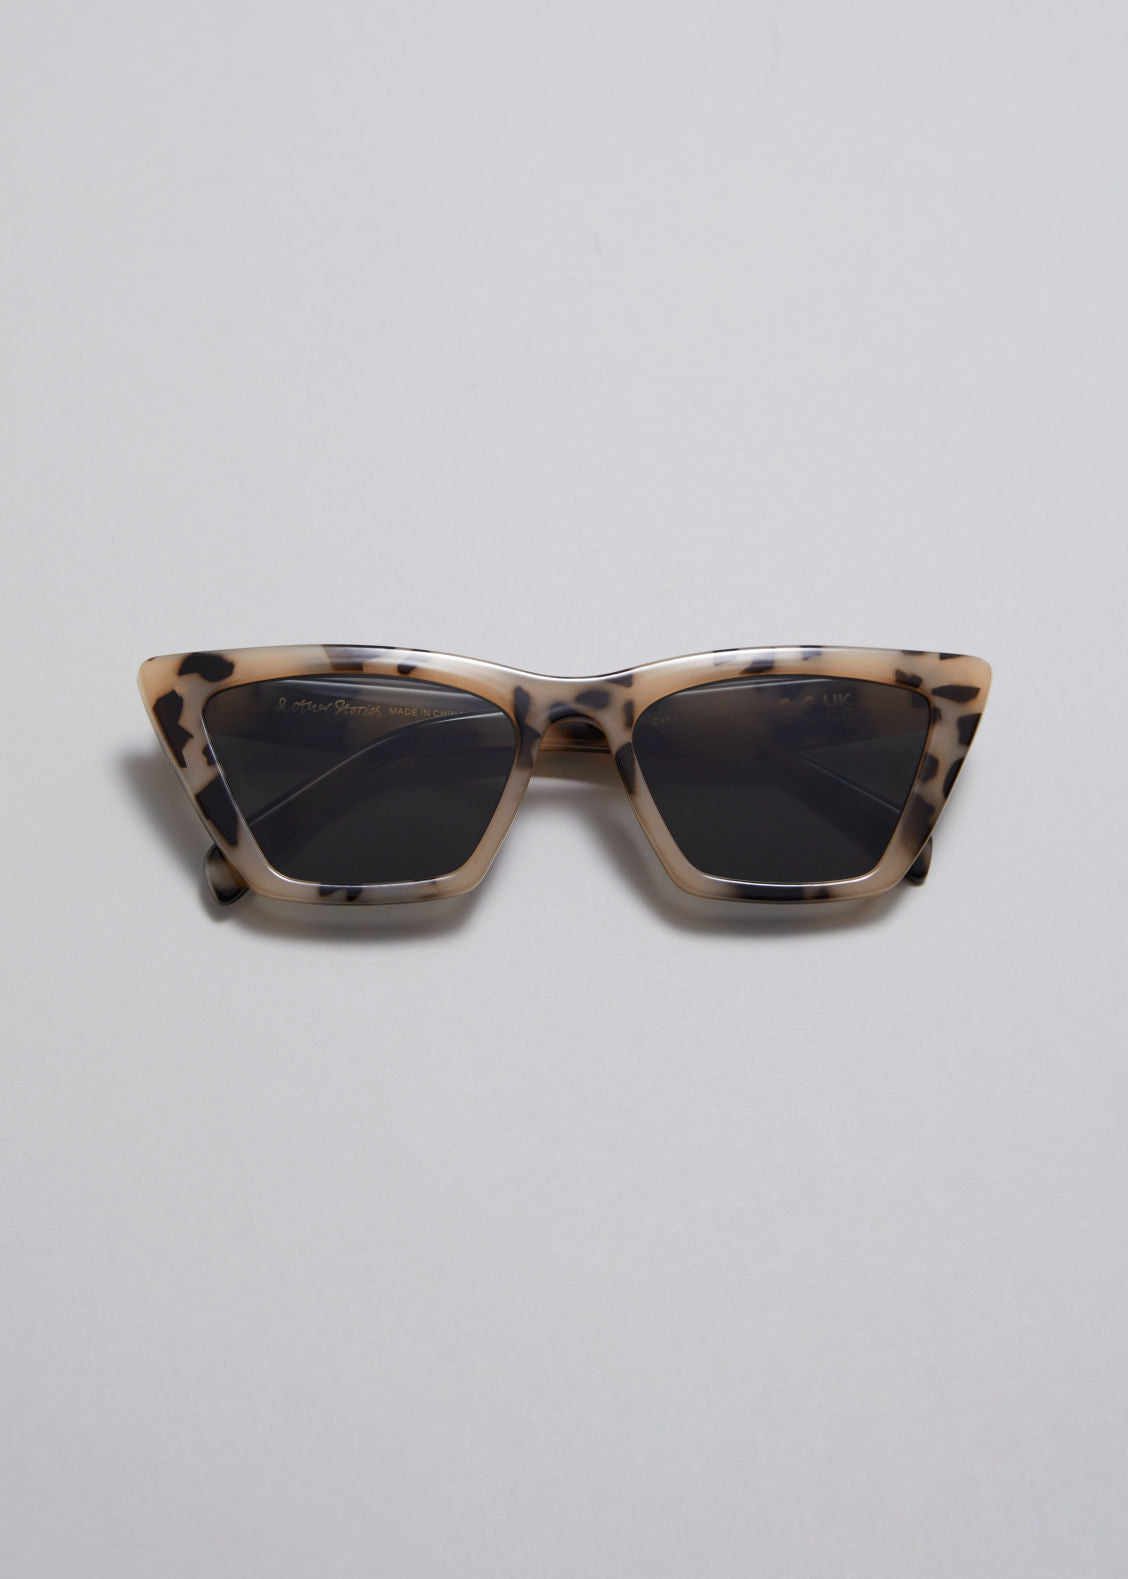 Angular cat eye sunglasses